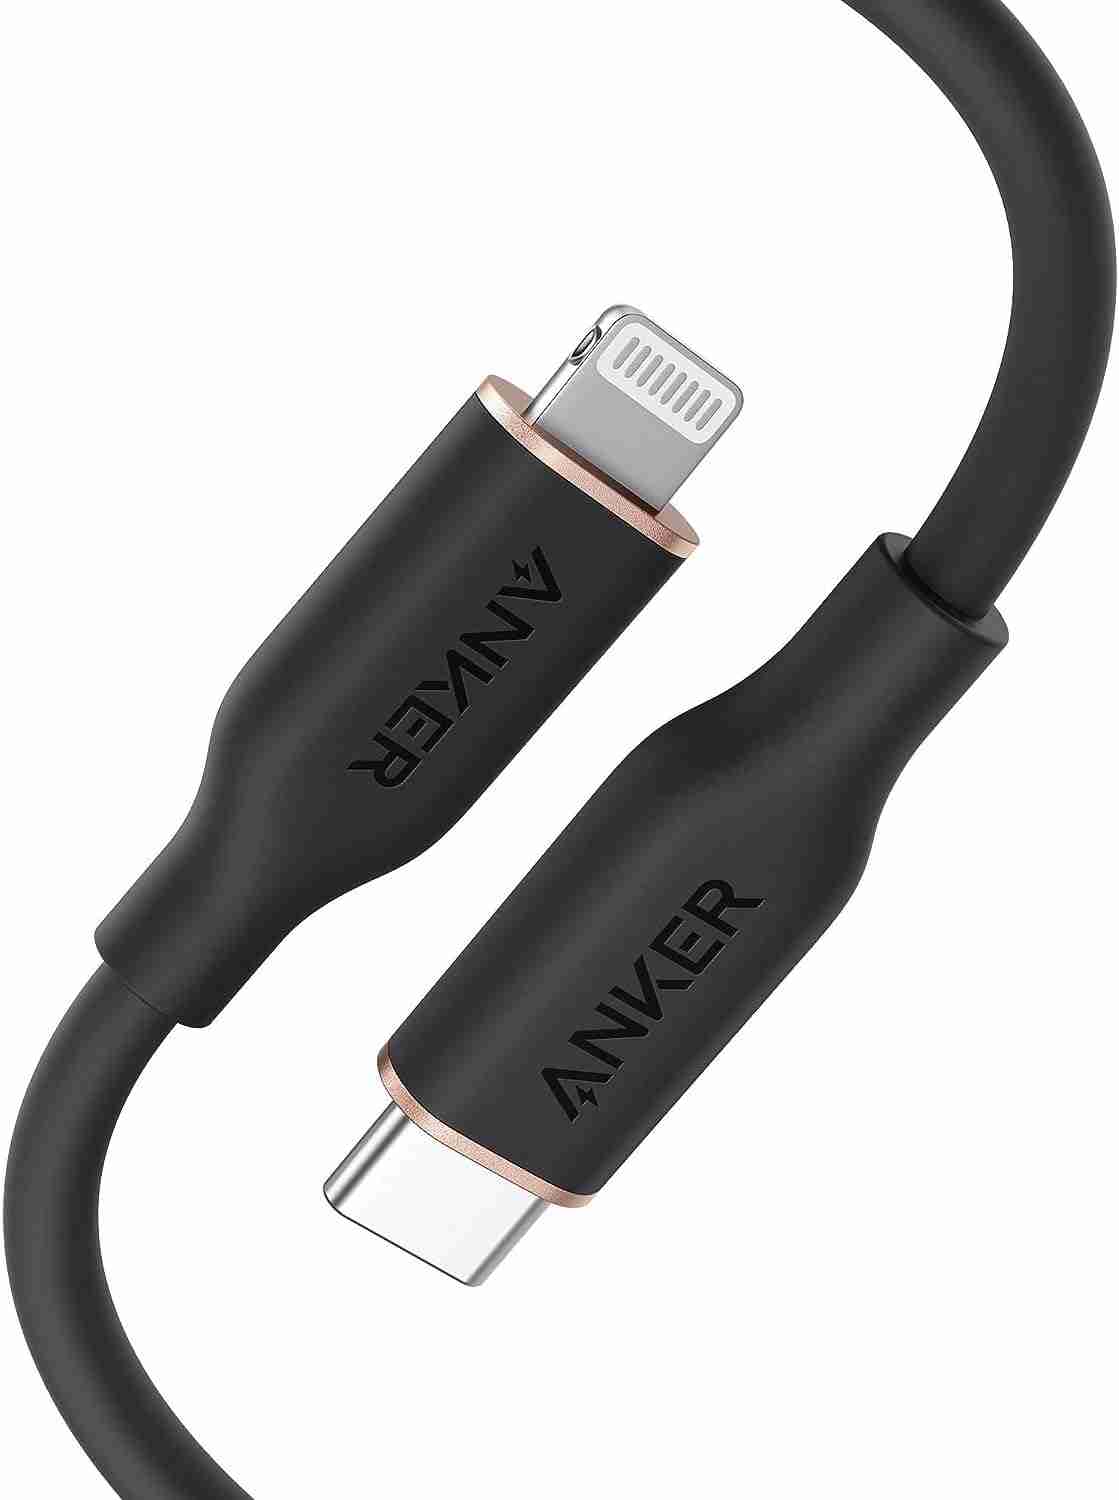 アンカー「Anker PowerLine III Flow USB-C & ライトニング ケーブル」の価格は税込2190円